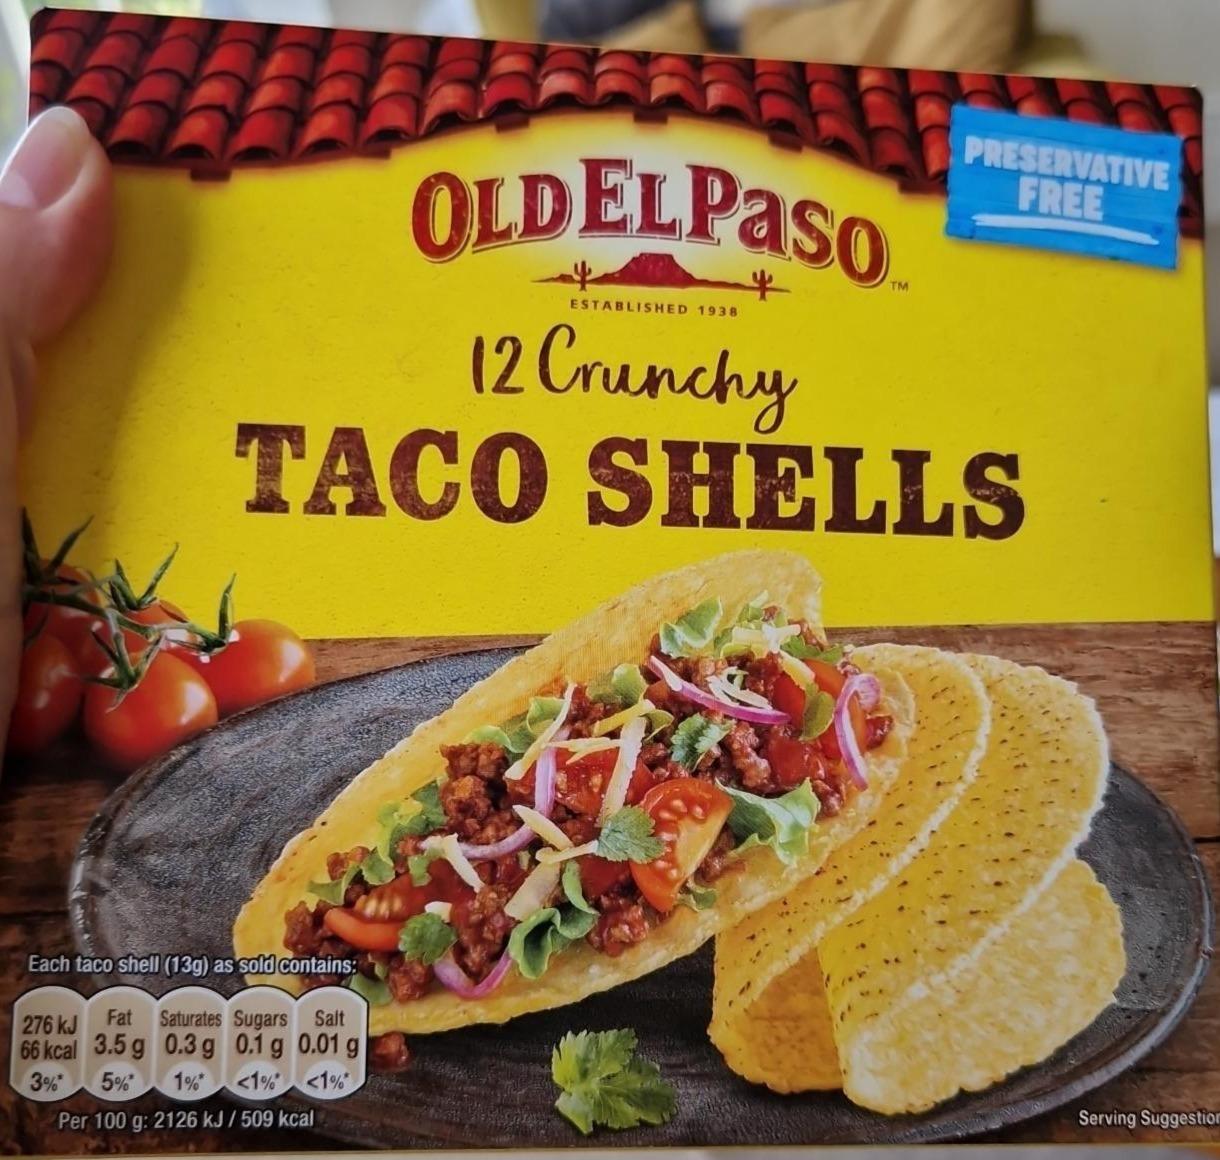 Fotografie - Crunchy Taco Shells Old El Paso